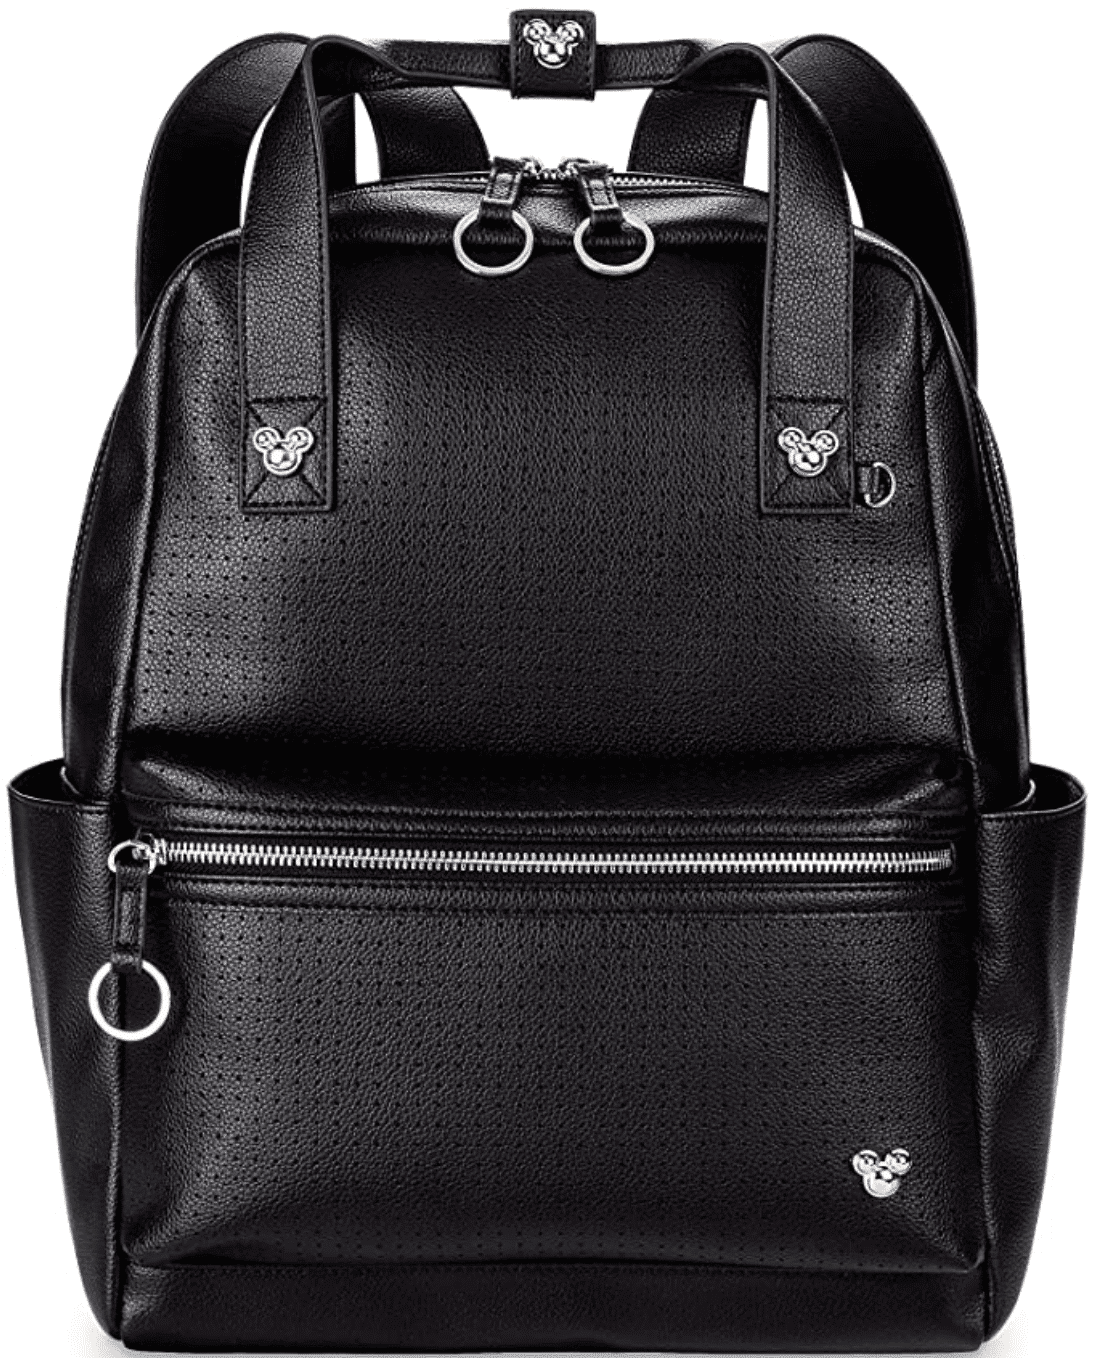 Black leather Disney Backpack